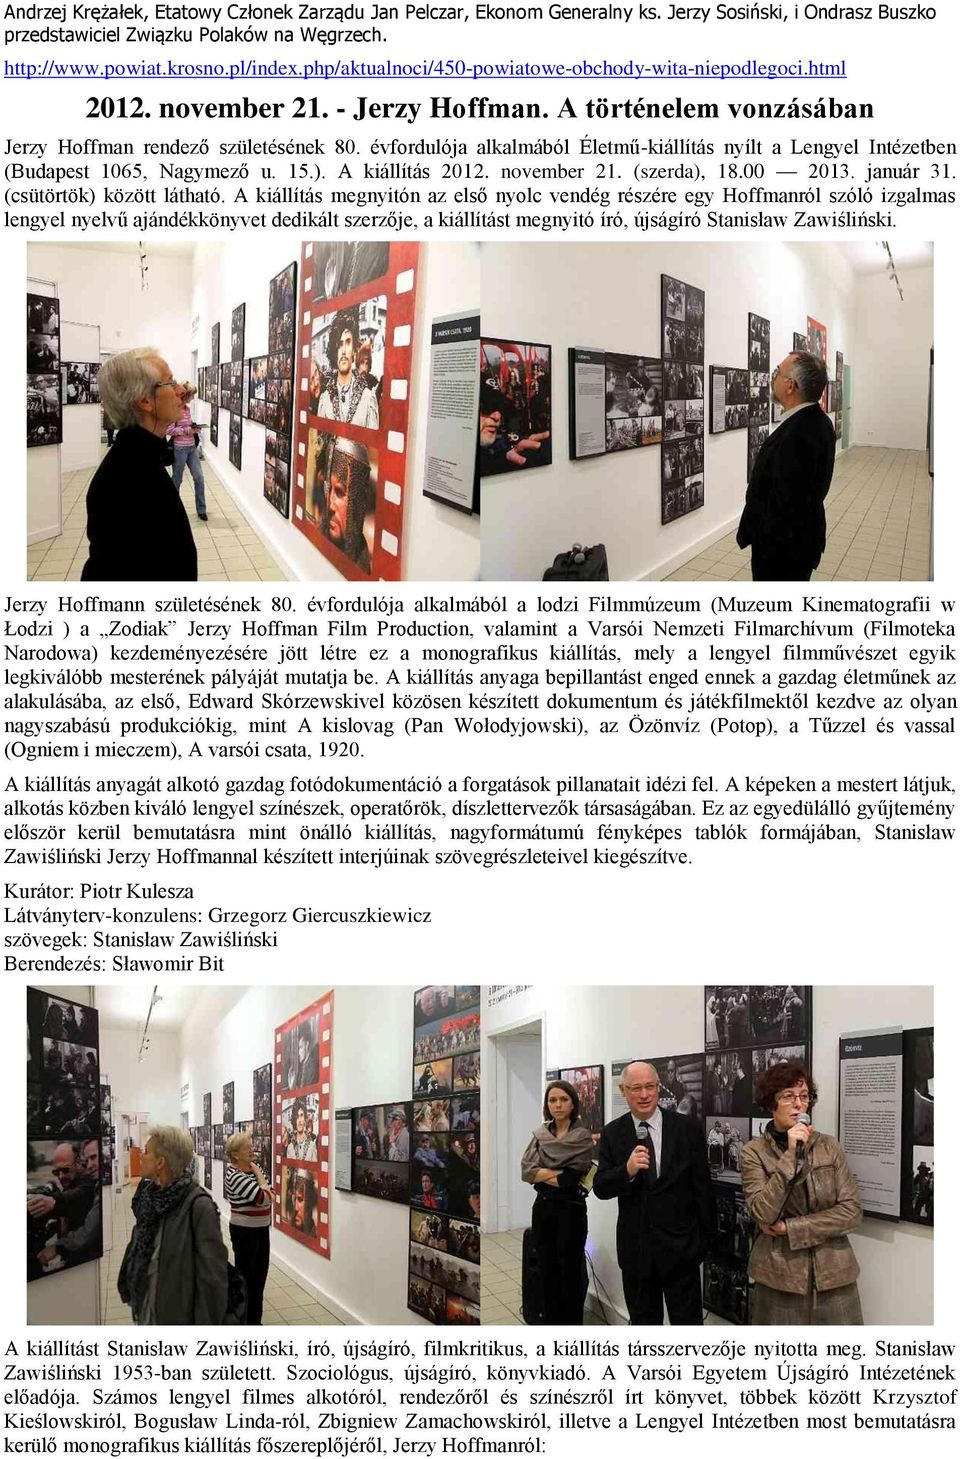 évfordulója alkalmából Életmű-kiállítás nyílt a Lengyel Intézetben (Budapest 1065, Nagymező u. 15.). A kiállítás 2012. november 21. (szerda), 18.00 2013. január 31. (csütörtök) között látható.